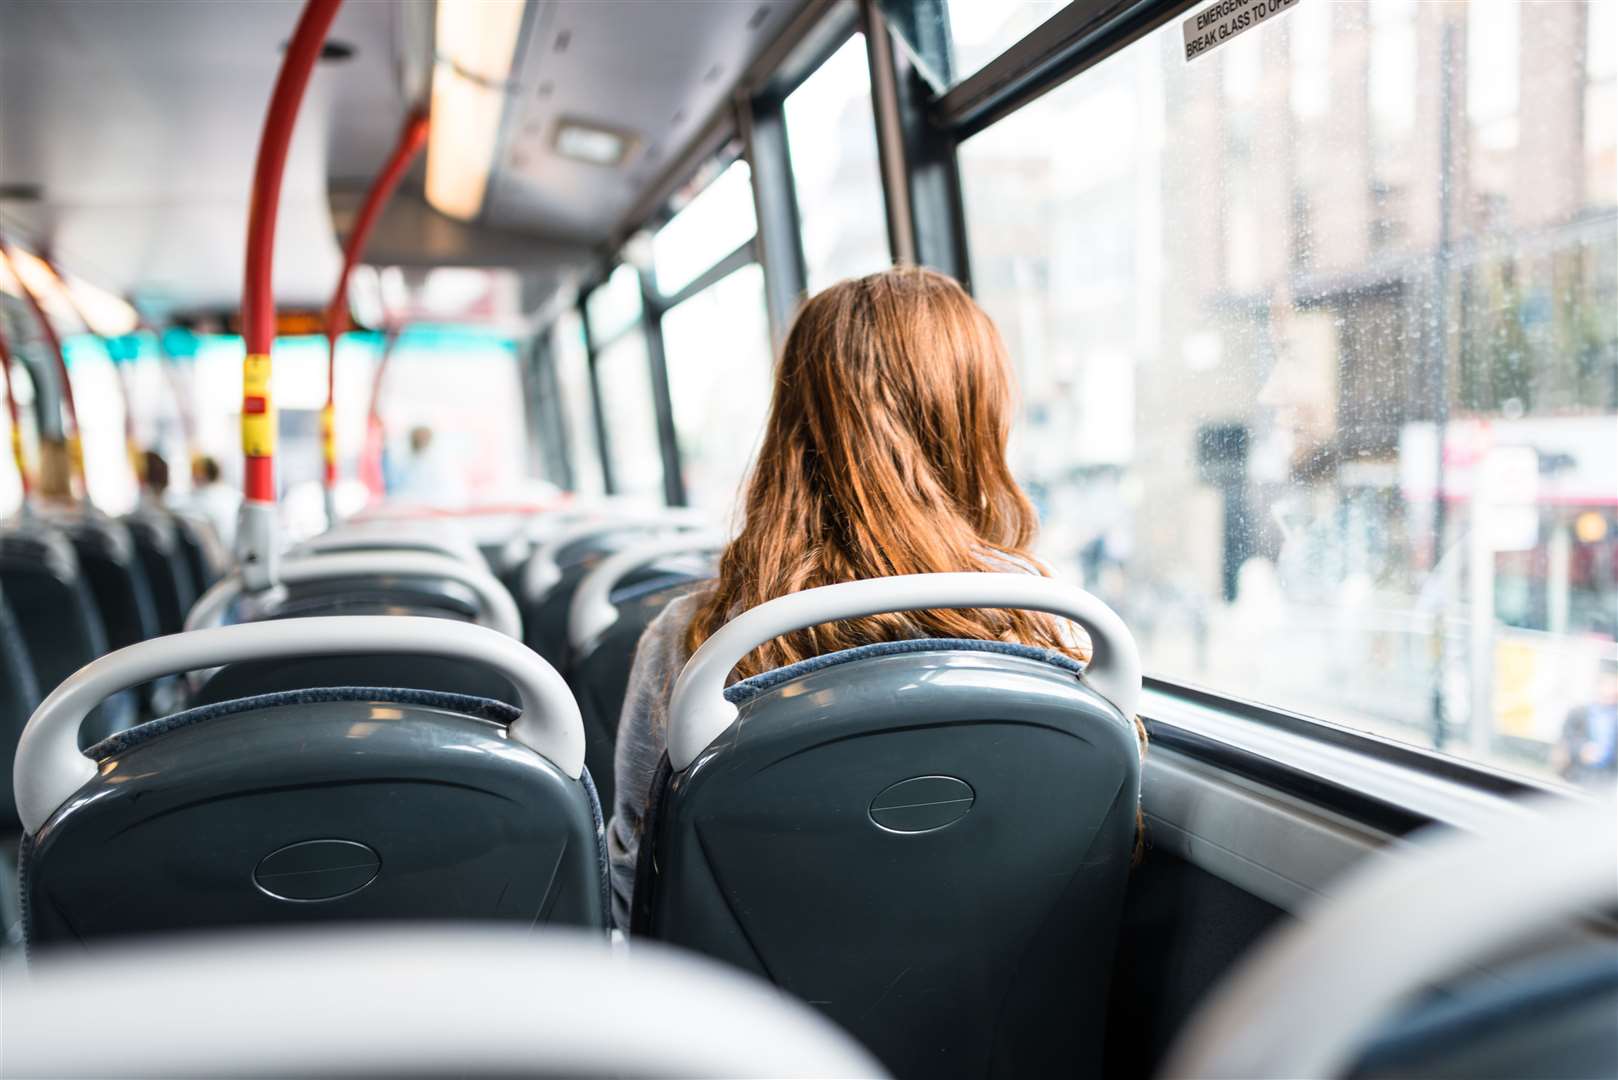 Bus journeys could ruin social bubbles